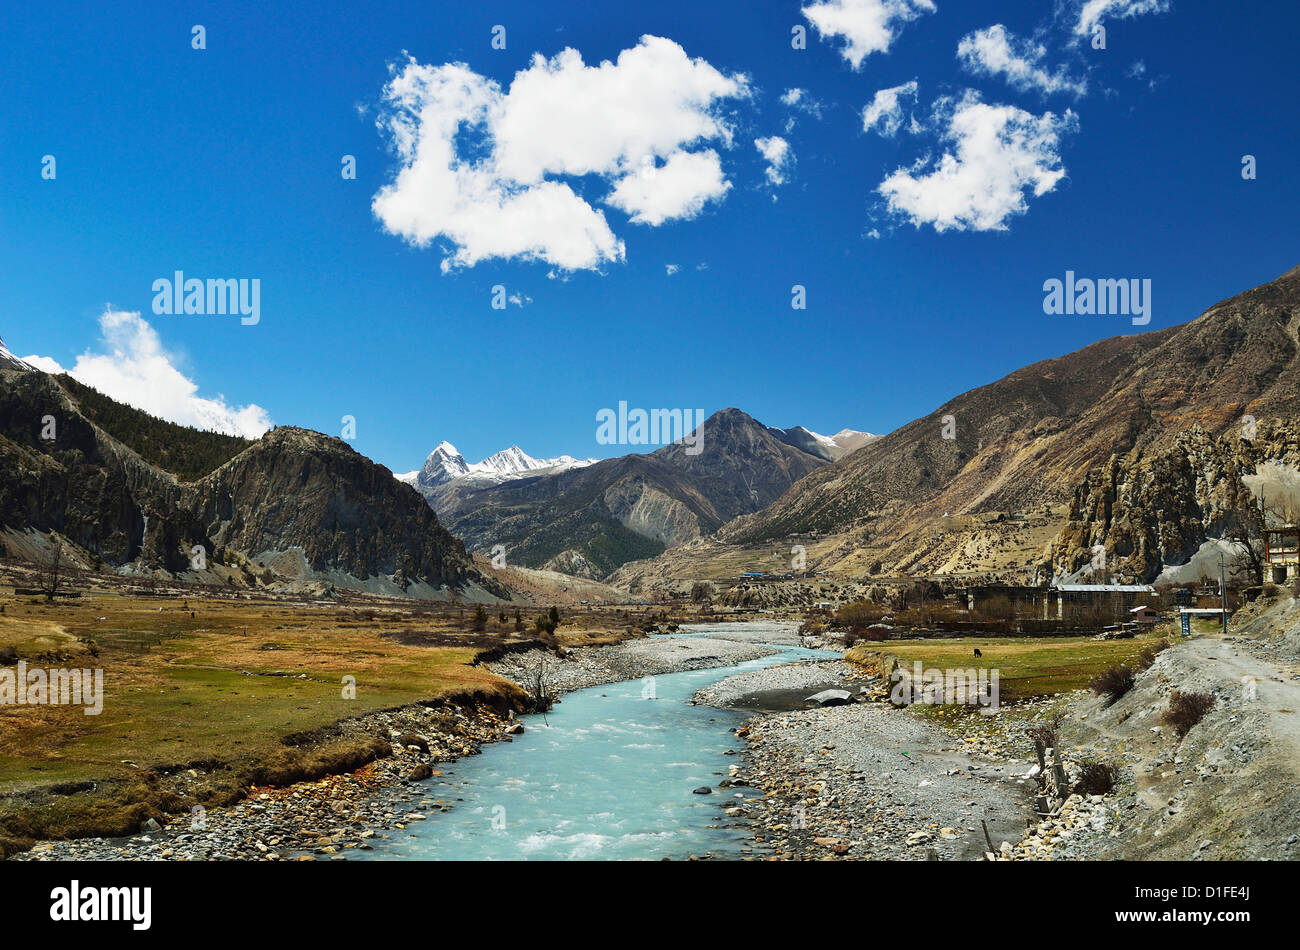 Marsyangdi River Valley, de l'Annapurna Conservation Area, Gandaki, Région de l'Ouest (Pashchimanchal), Népal, Asie Banque D'Images